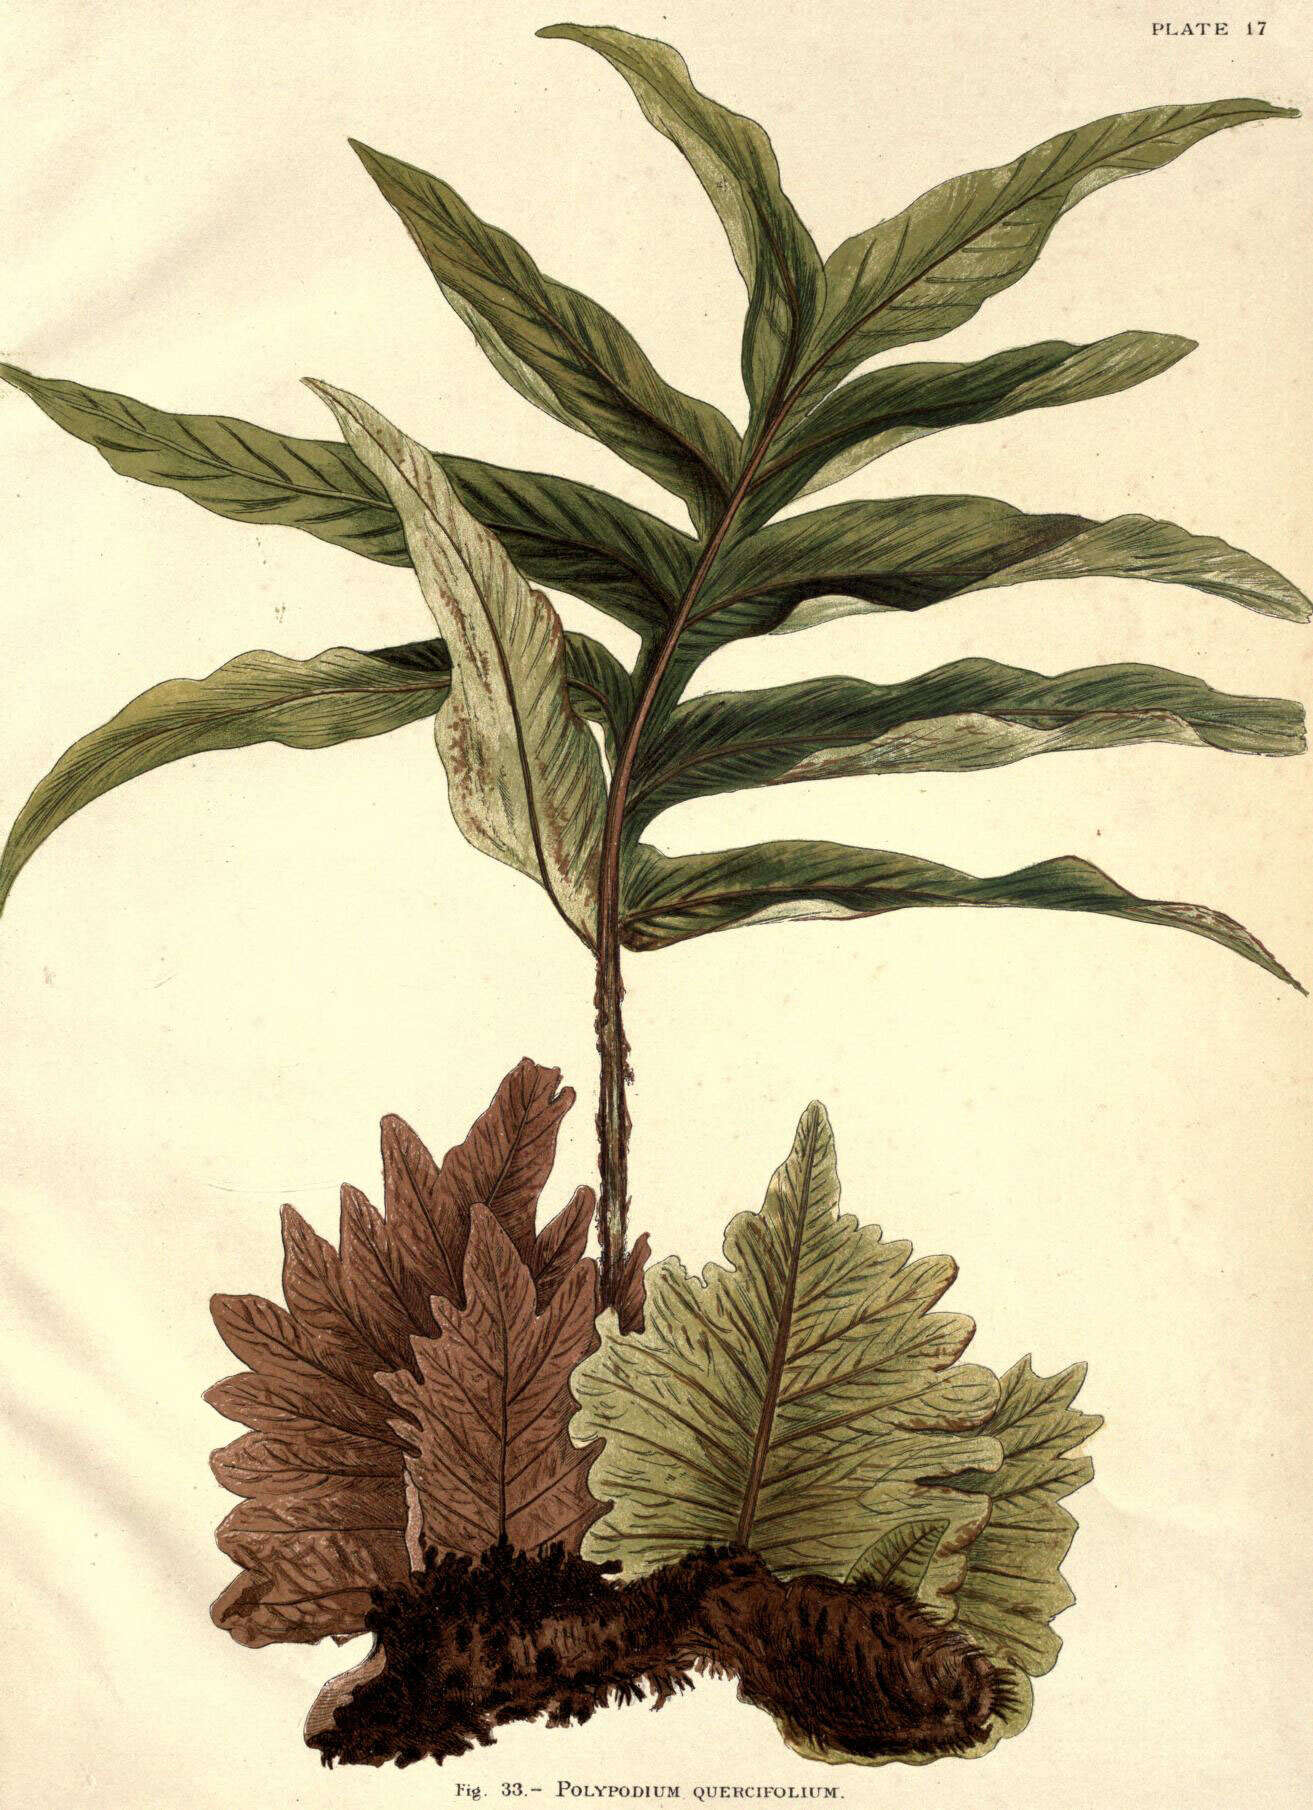 Image of basket fern